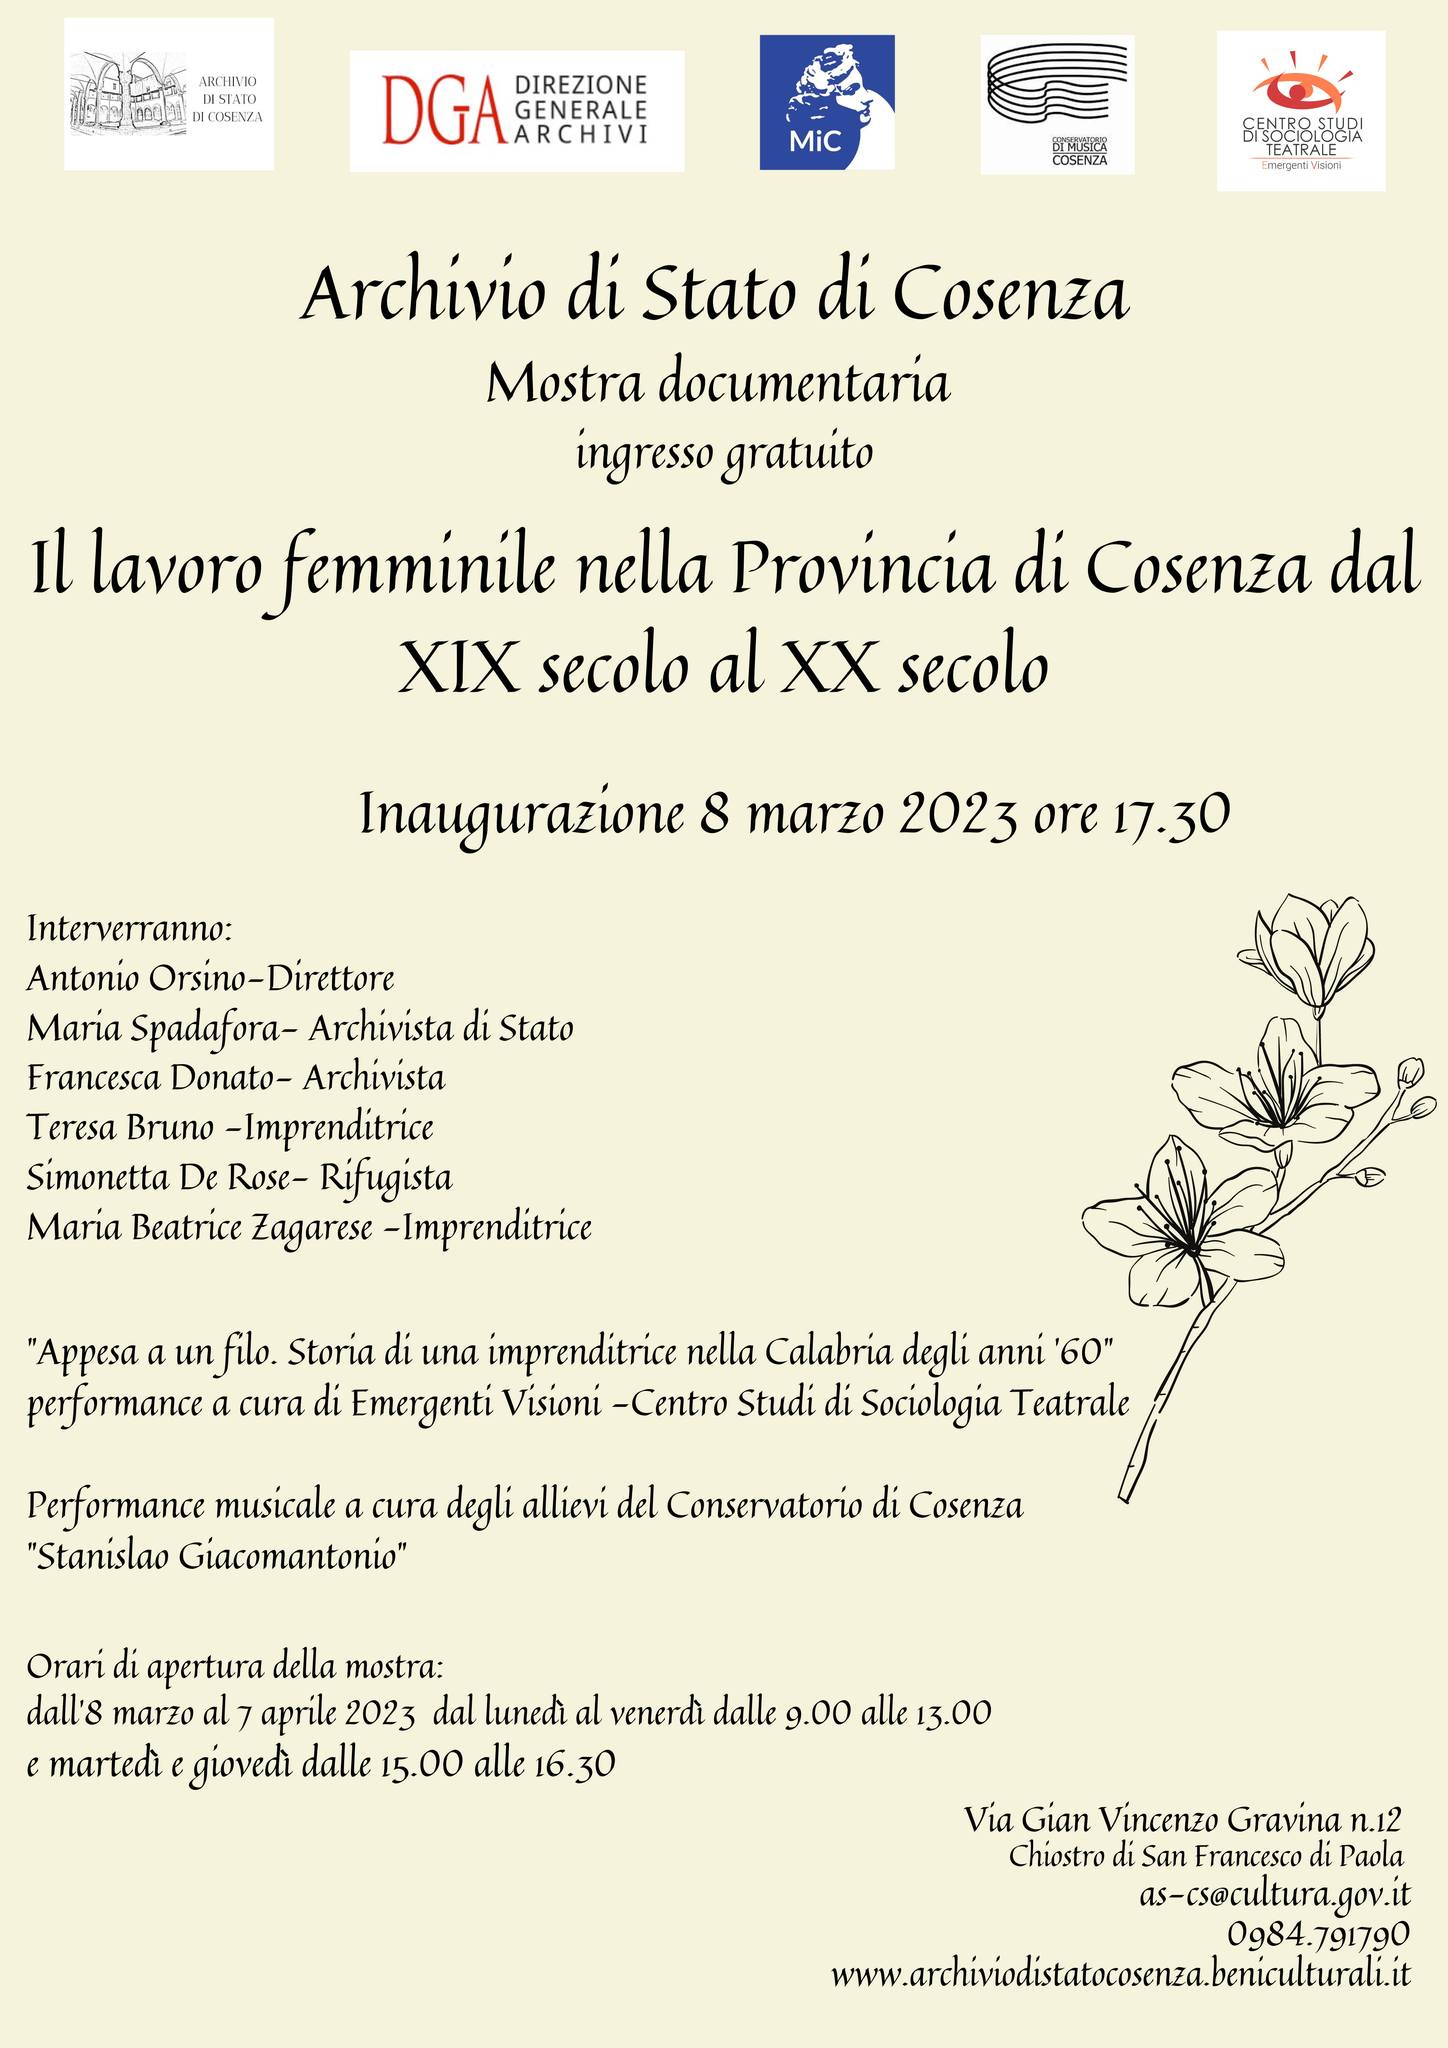 Giornata internazionale della donna: “Il lavoro femminile nella provincia di Cosenza dal XIX sec al XX sec.”